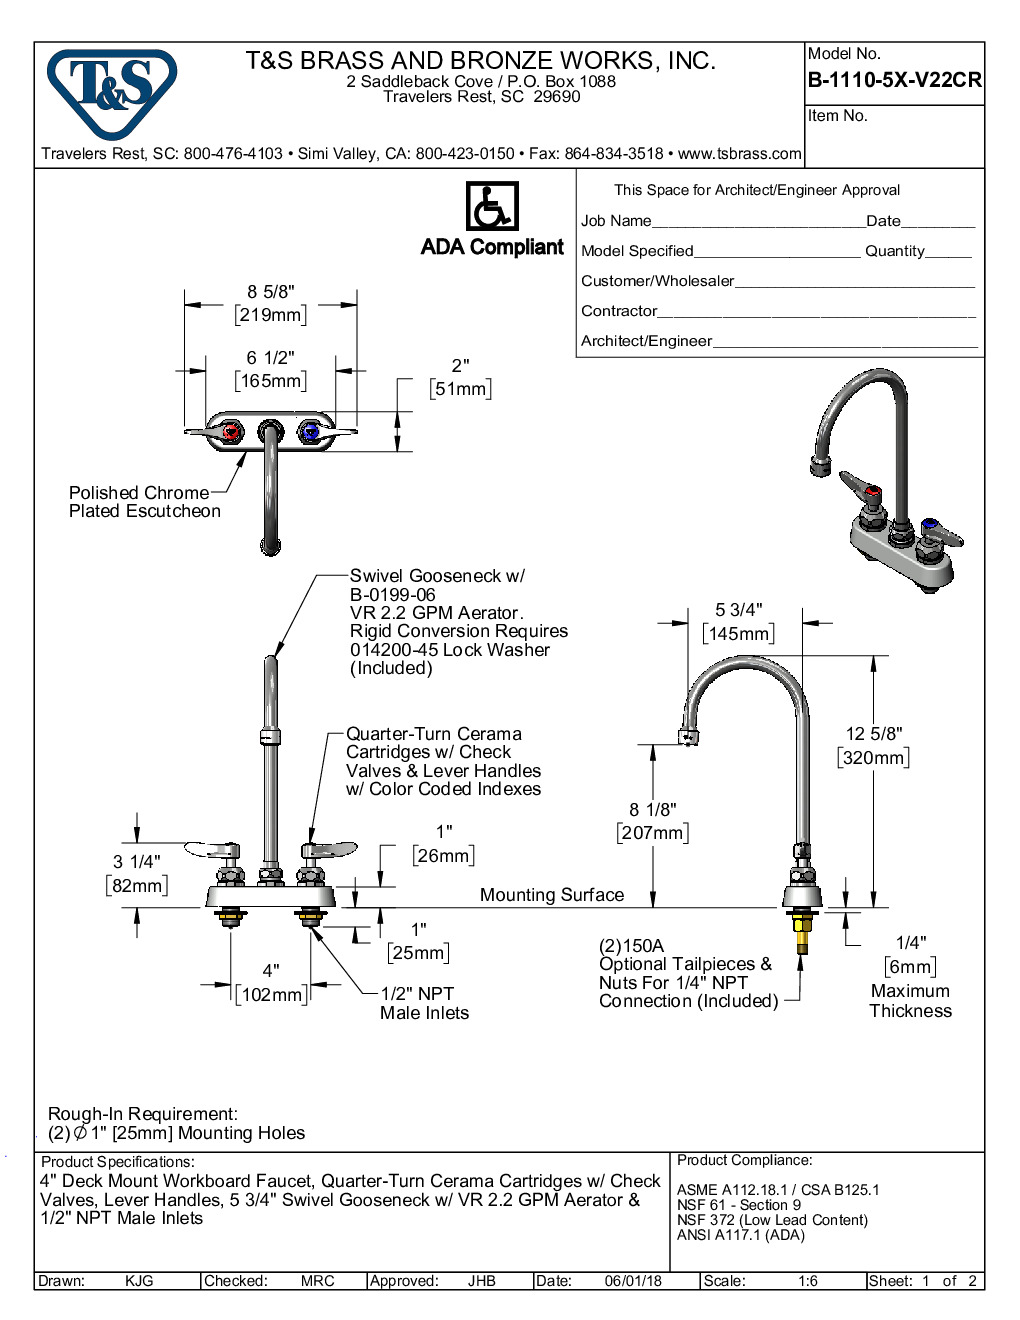 T&S Brass B-1110-5X-V22CR Deck Mount Faucet